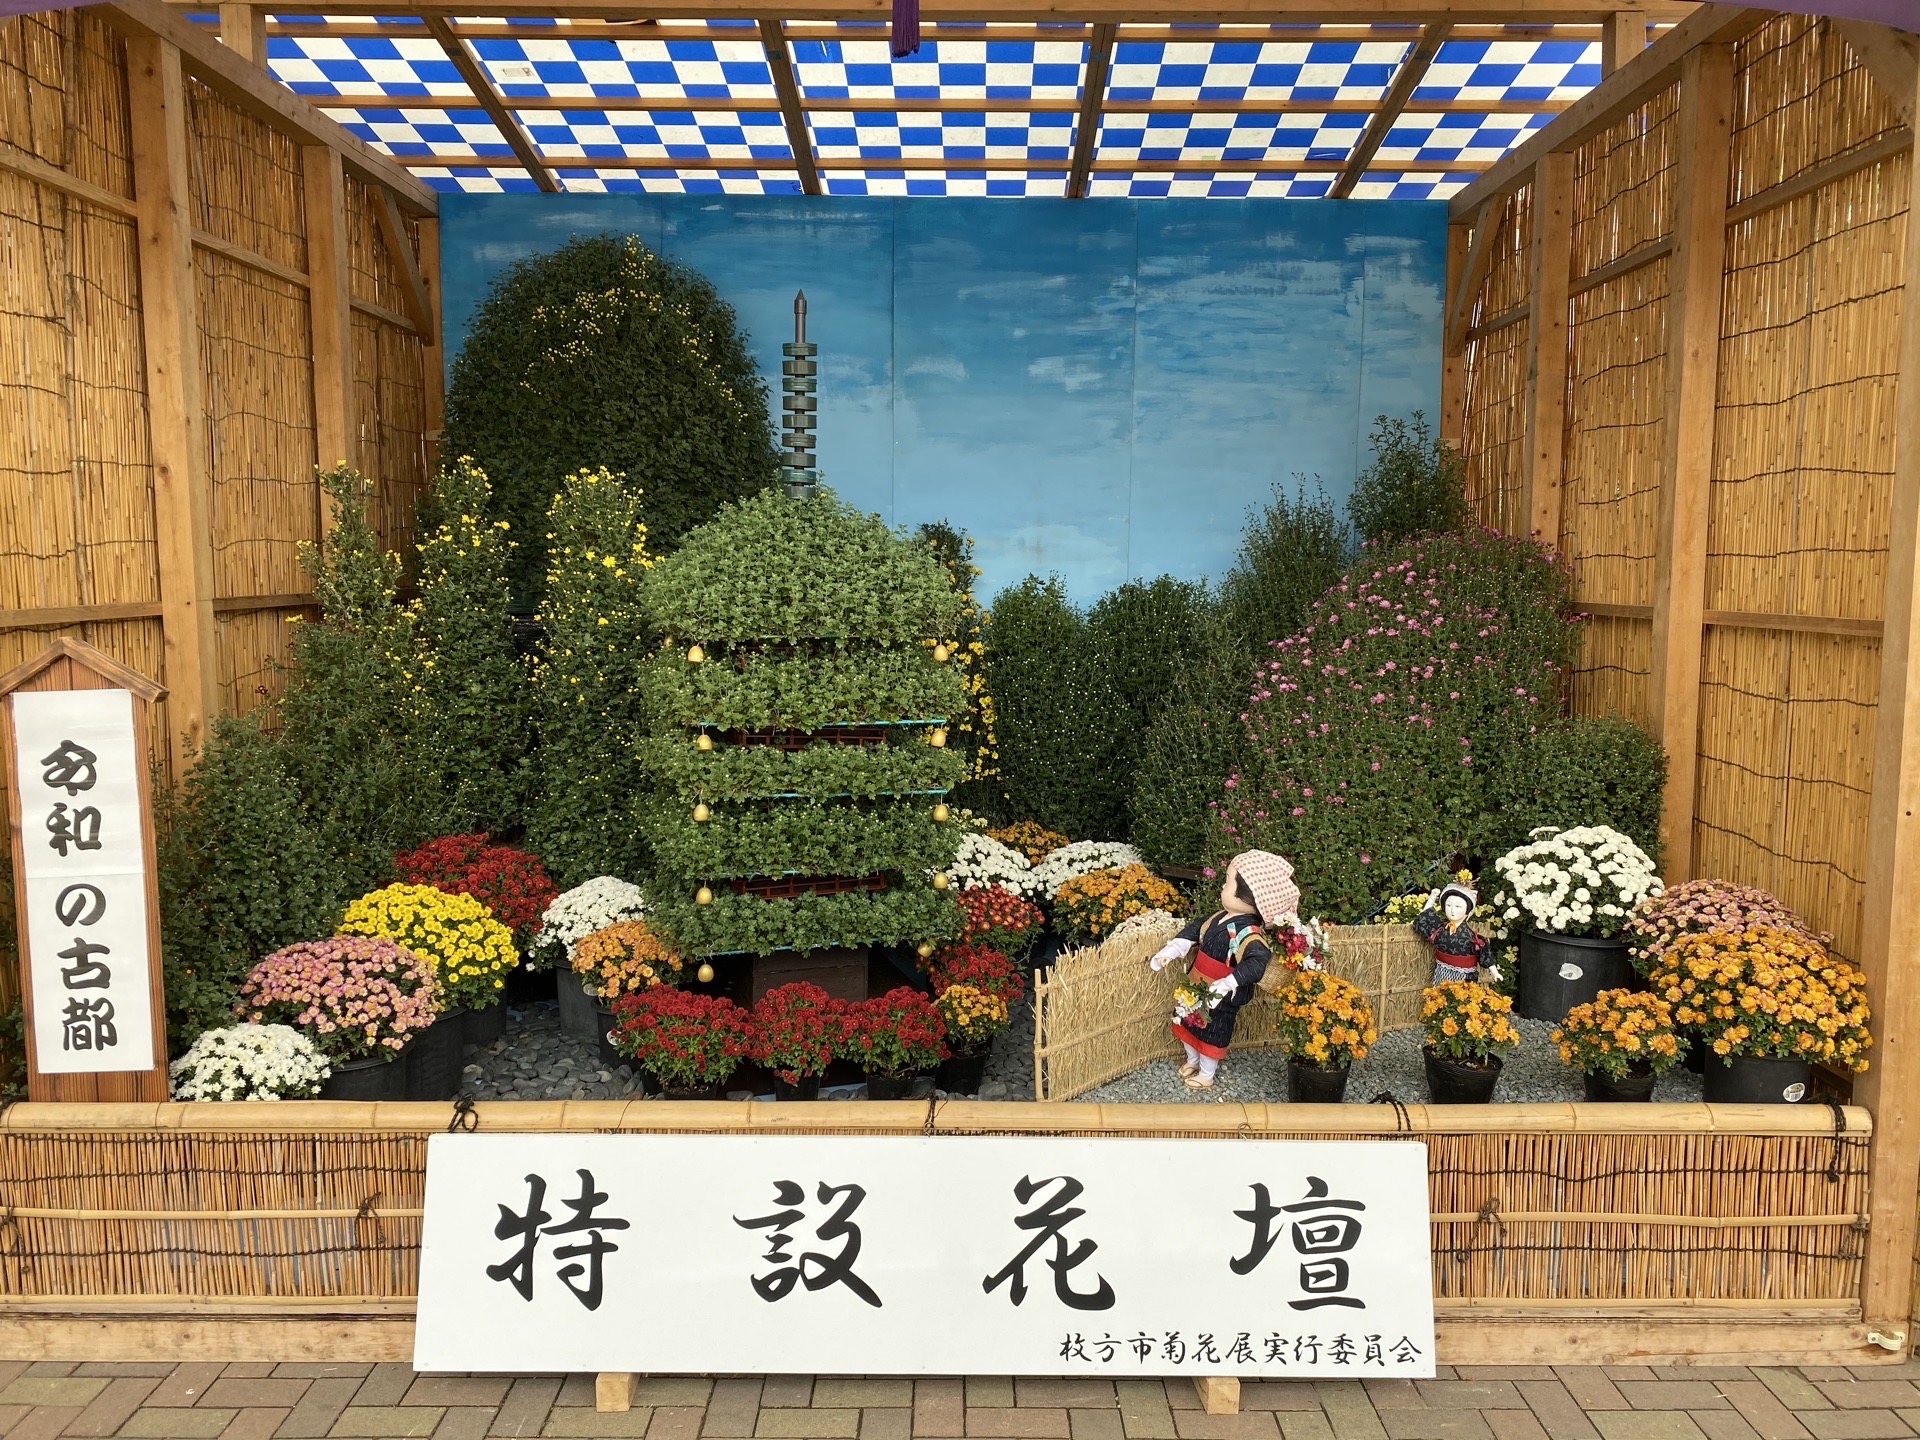 【大阪·枚方市】  枚方市的市花是菊花，每年都会举办菊花展，这里有全日本最美的菊花，请一定要来看一看